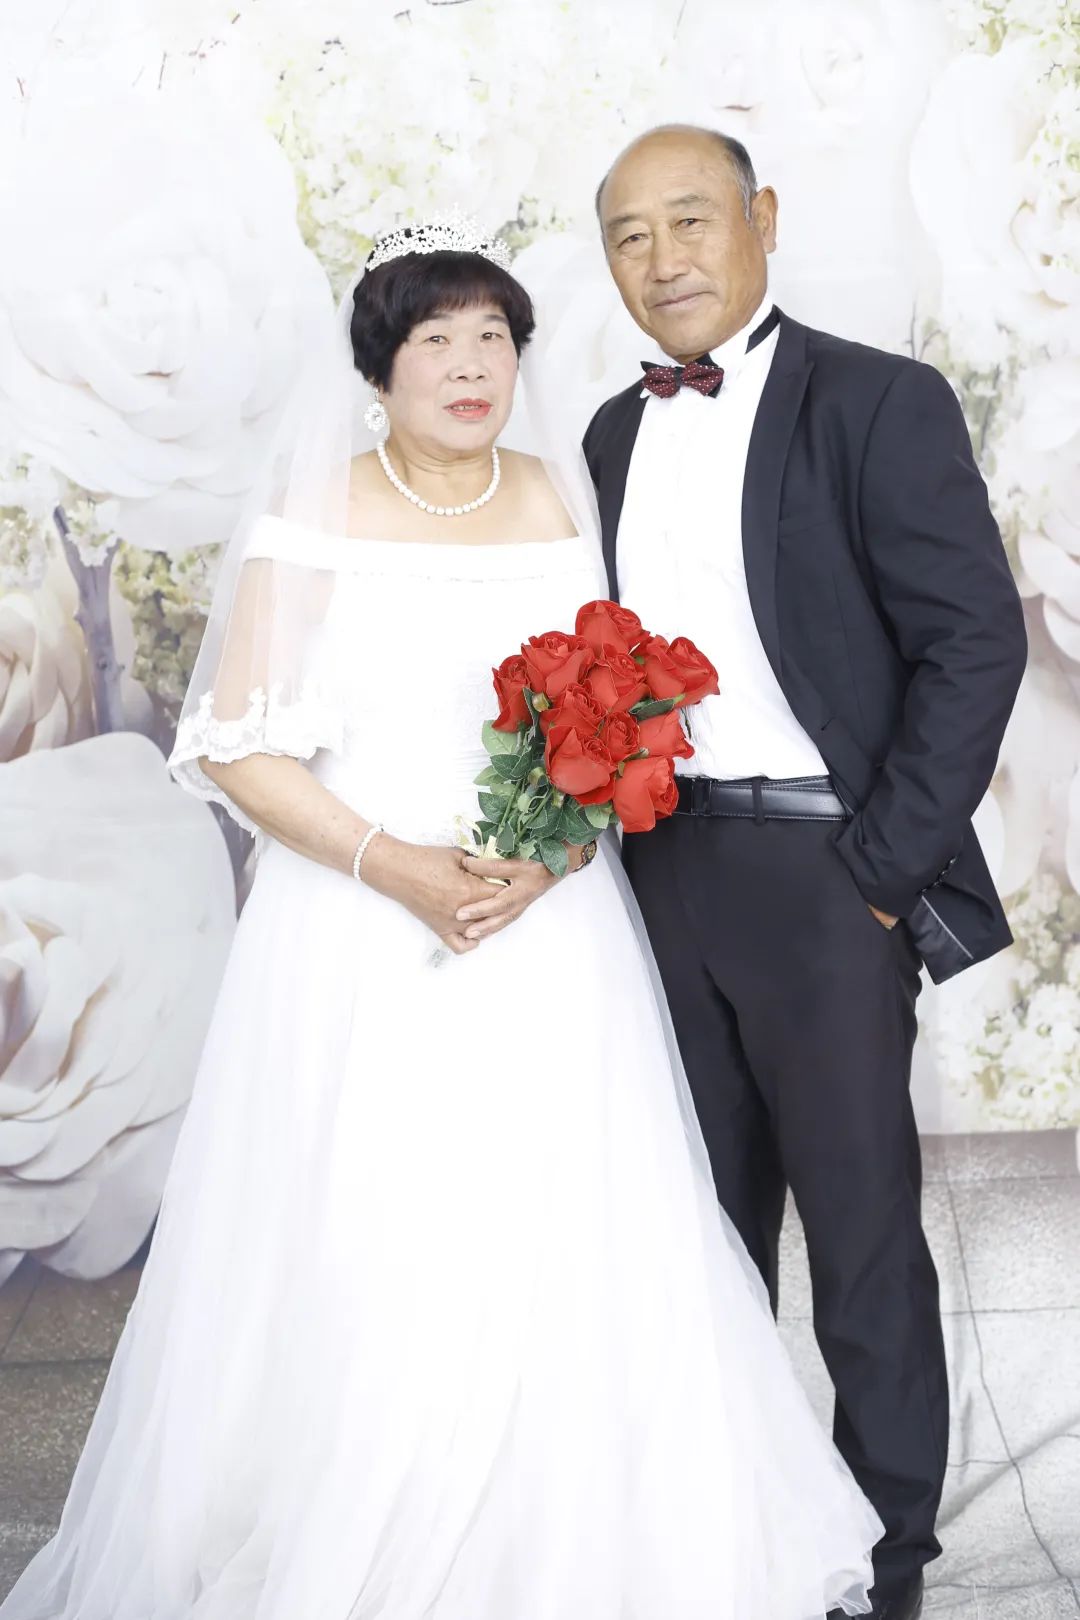 当日,杨道春就取到了这次拍摄的婚纱照,立即发到了自己的家庭微信群中